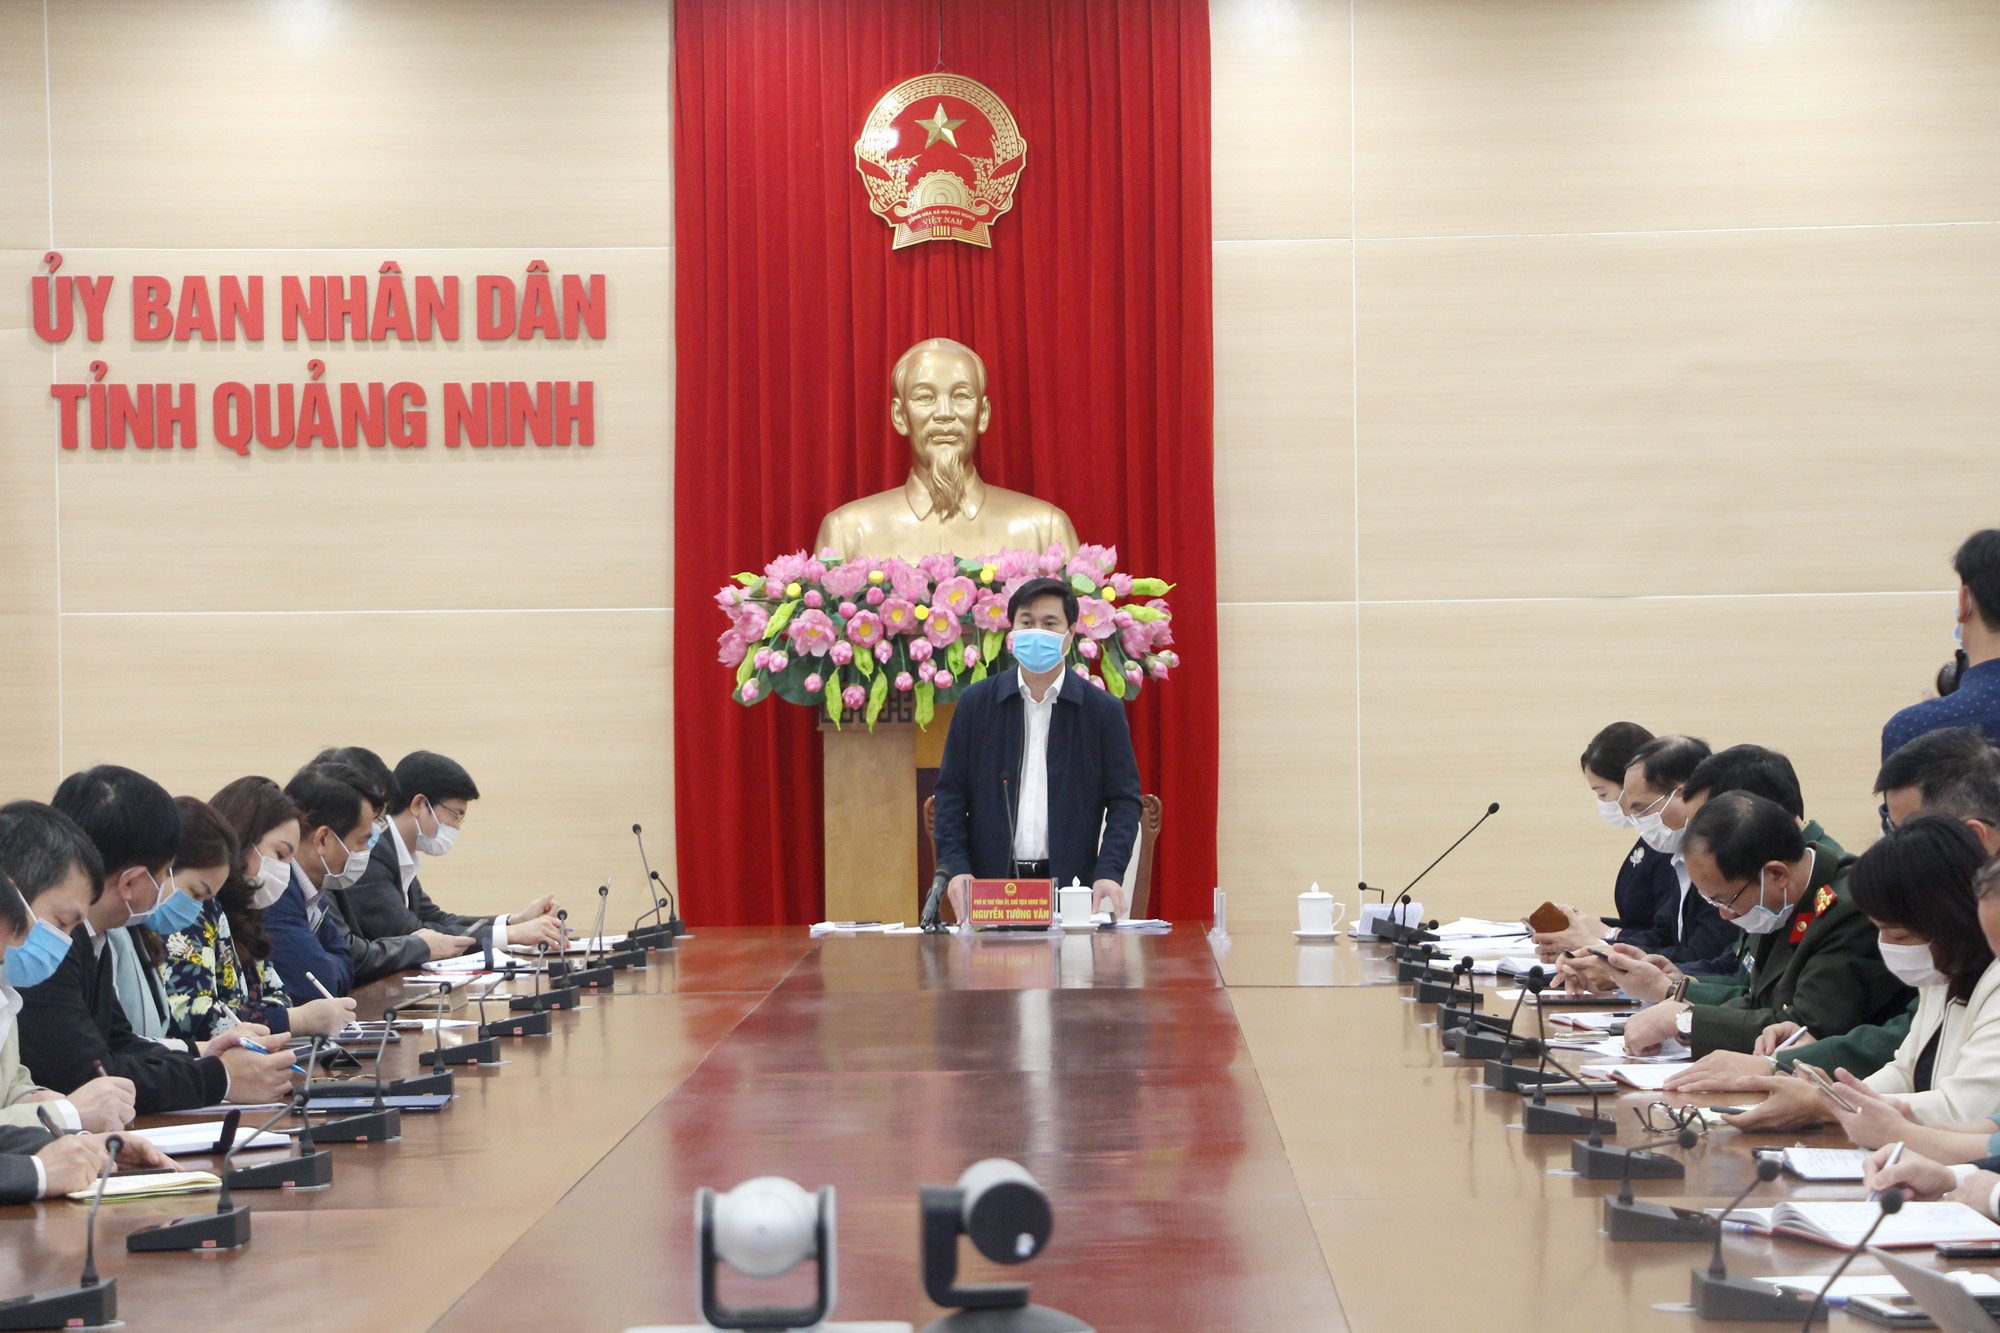 Đồng chí Nguyễn Tường Văn, Chủ tịch UBND tỉnh, kết luận cuộc họp.